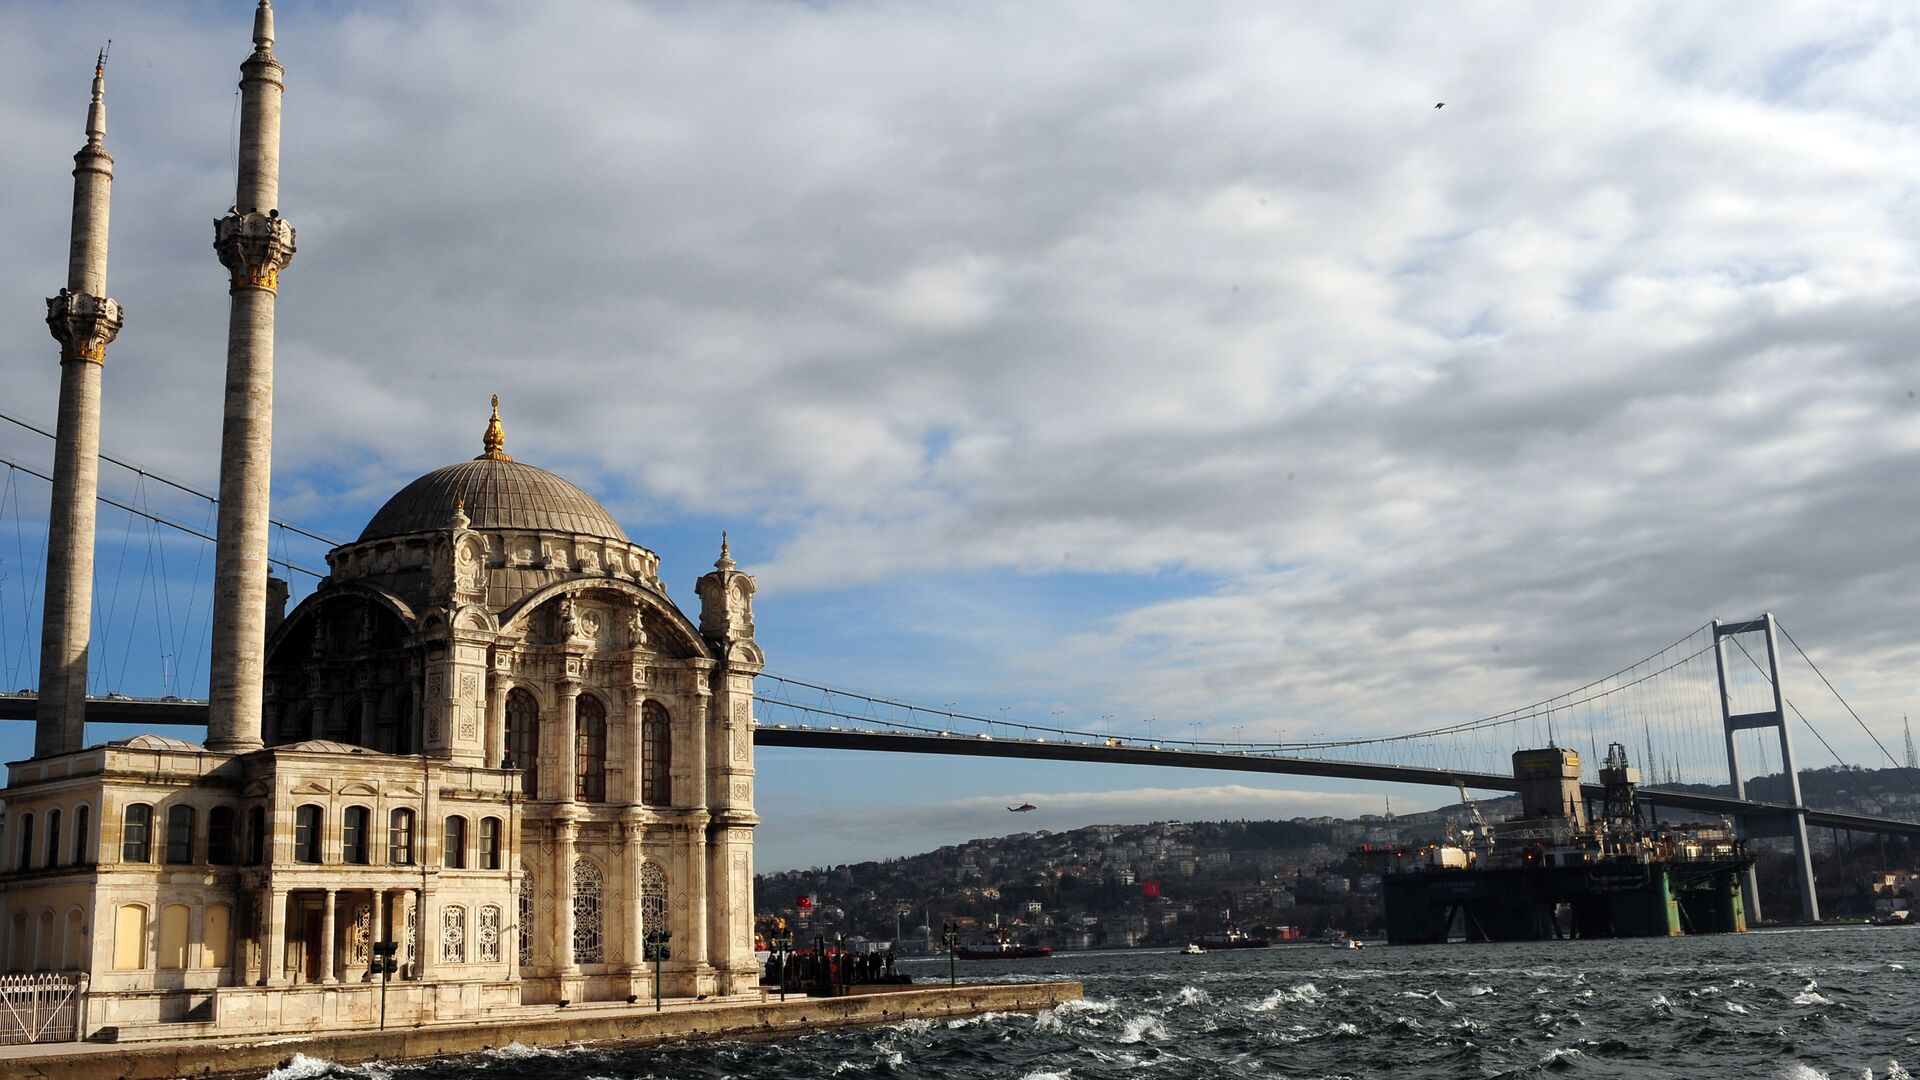 Мост через Босфорский пролив в Стамбуле. - Sputnik Аҧсны, 1920, 28.03.2022